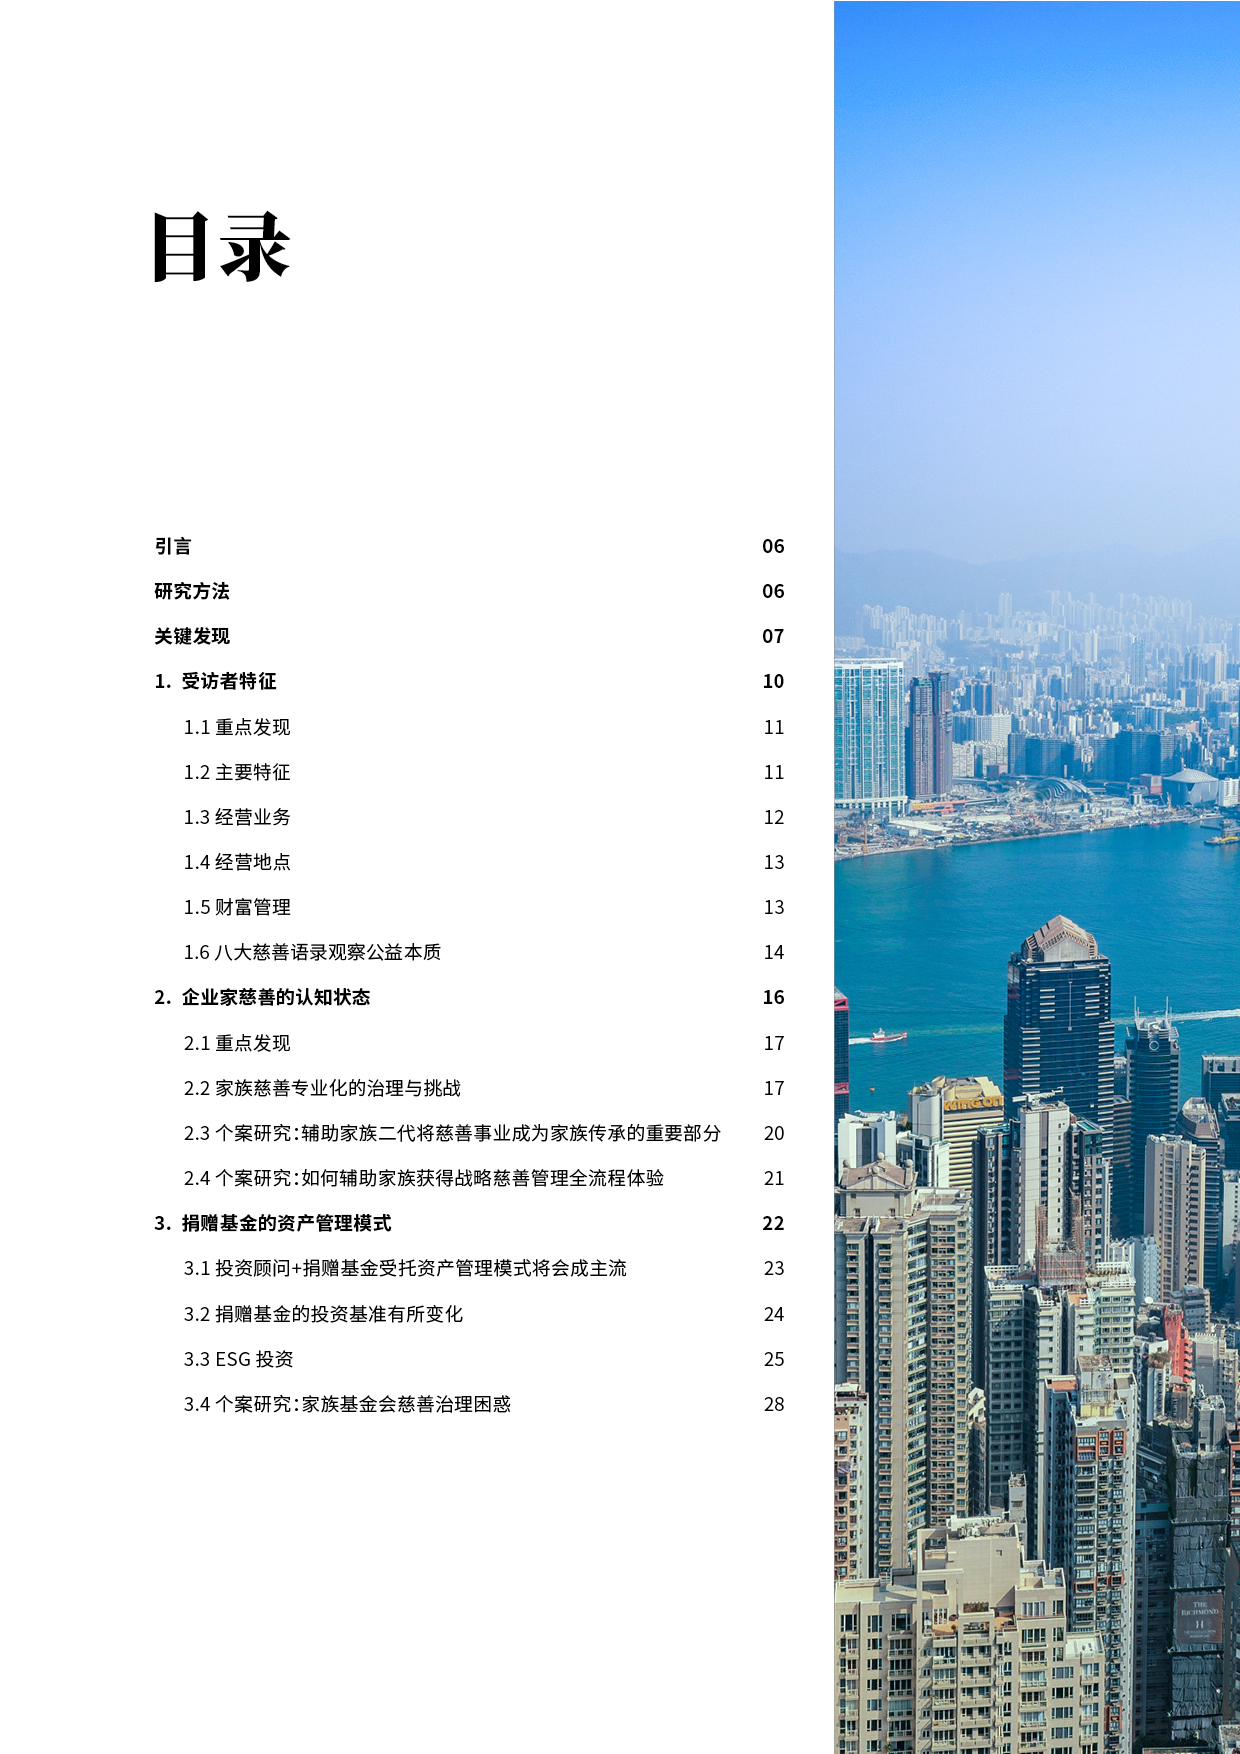 【即将发布】2022中国企业家慈善报告